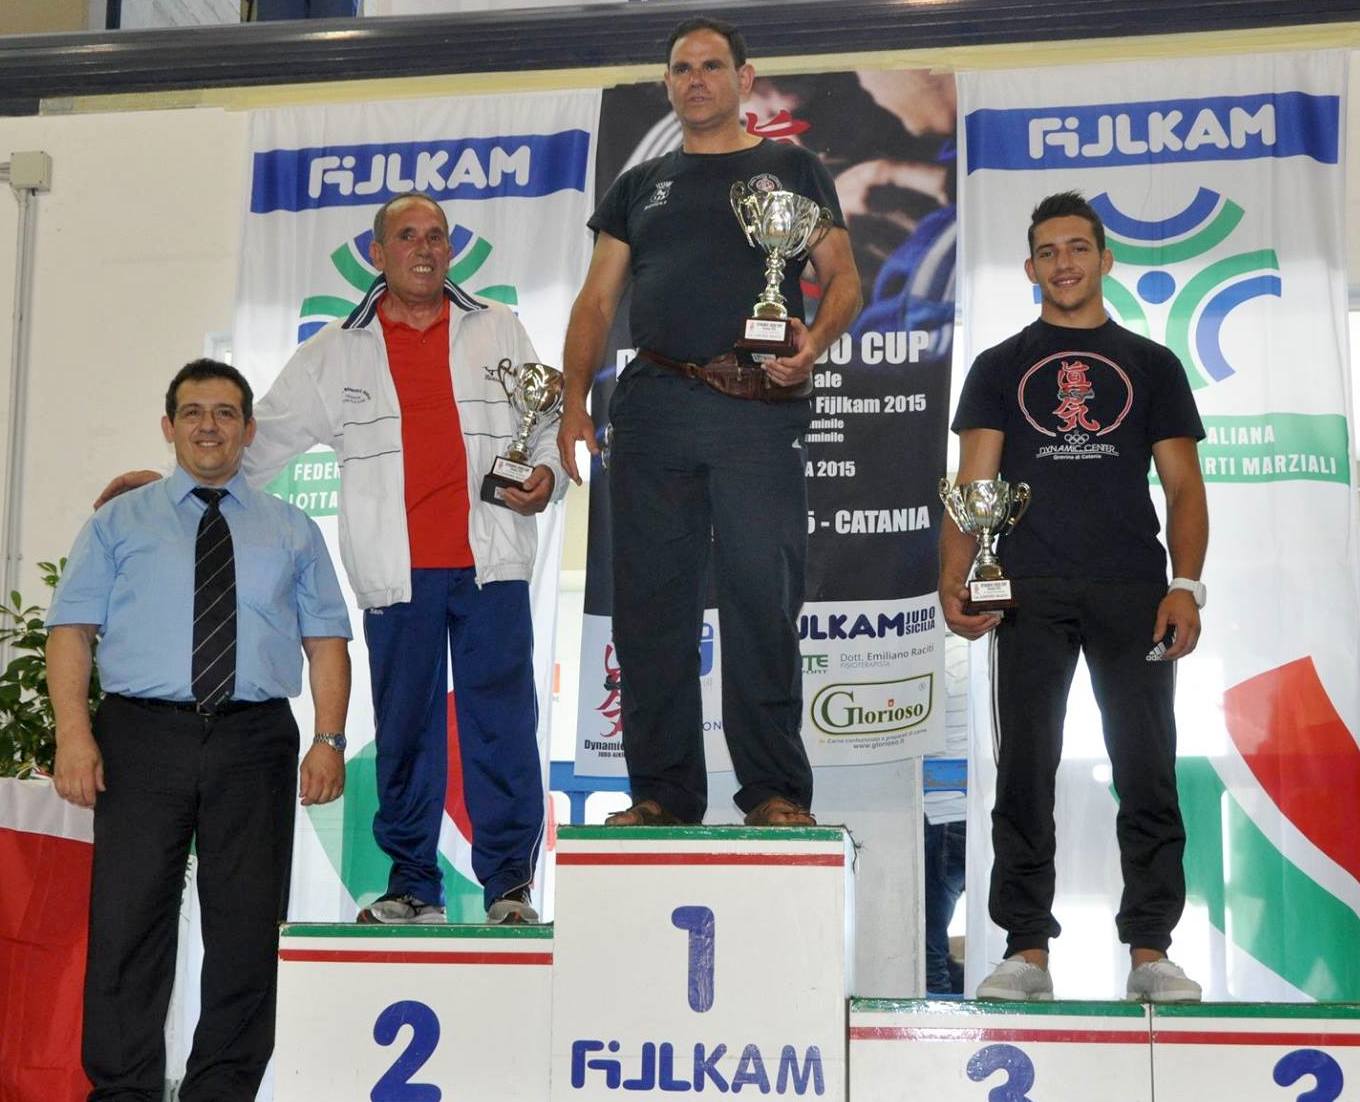 Il Grand Prix juniores a Catania premia Mestre 2001 (F) e Koizumi Scicli (M)